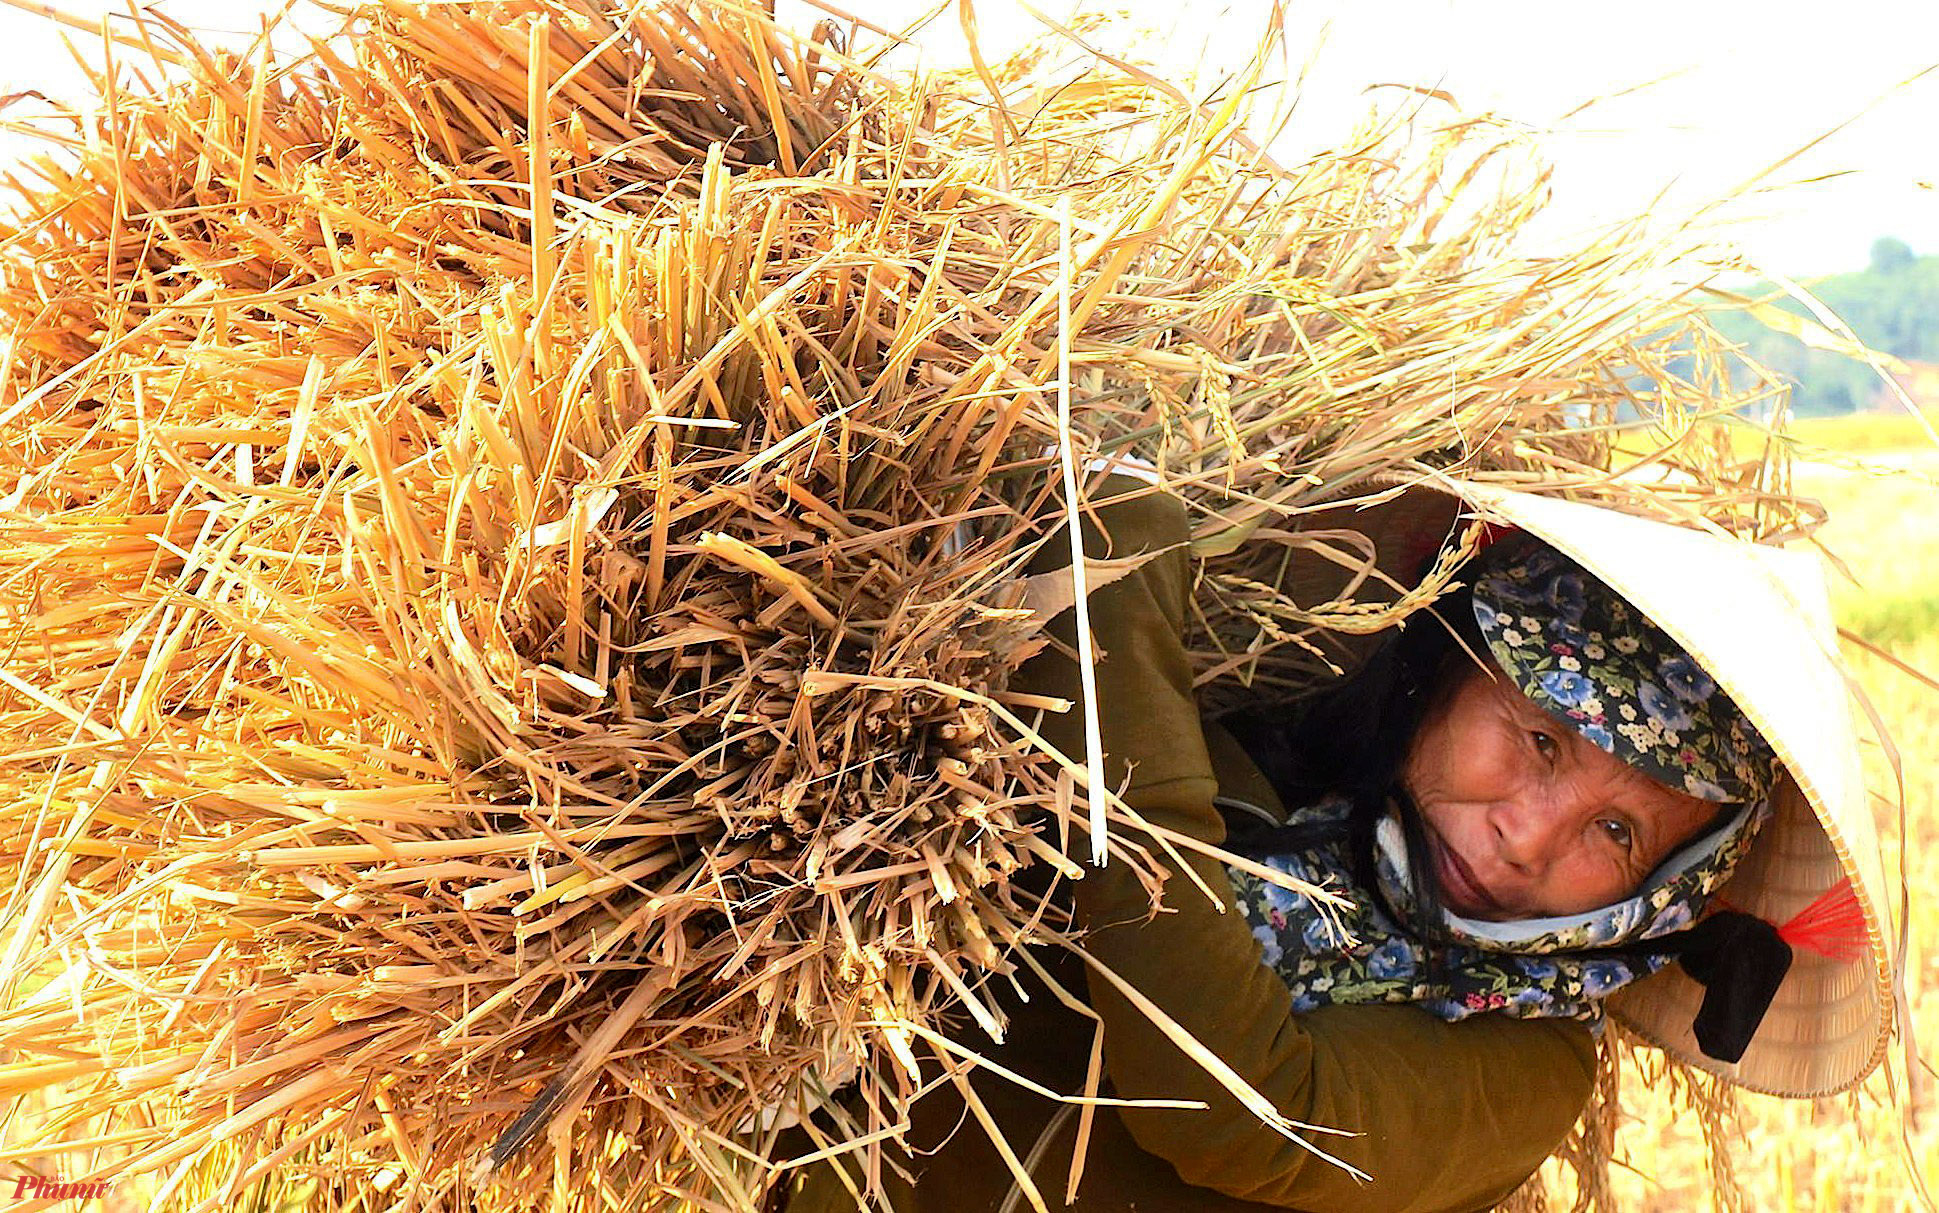 Bà Nguyễn Thị Mai (59 tuổi, trú xã Minh Thành, huyện Yên Thành, Nghệ An) cho biết, gia đình có 5 sào lúa đã quá ngày thu hoạch. Mấy hôm nay, gia đình đã liên tục gọi máy về gặt lúa song cũng chỉ mới gặt được 1 sào. “Sốt ruột quá, cả nhà phải gặt tay. Nhưng nắng quá cũng chỉ mới gặt được 2 sào” - bà Mai nói.